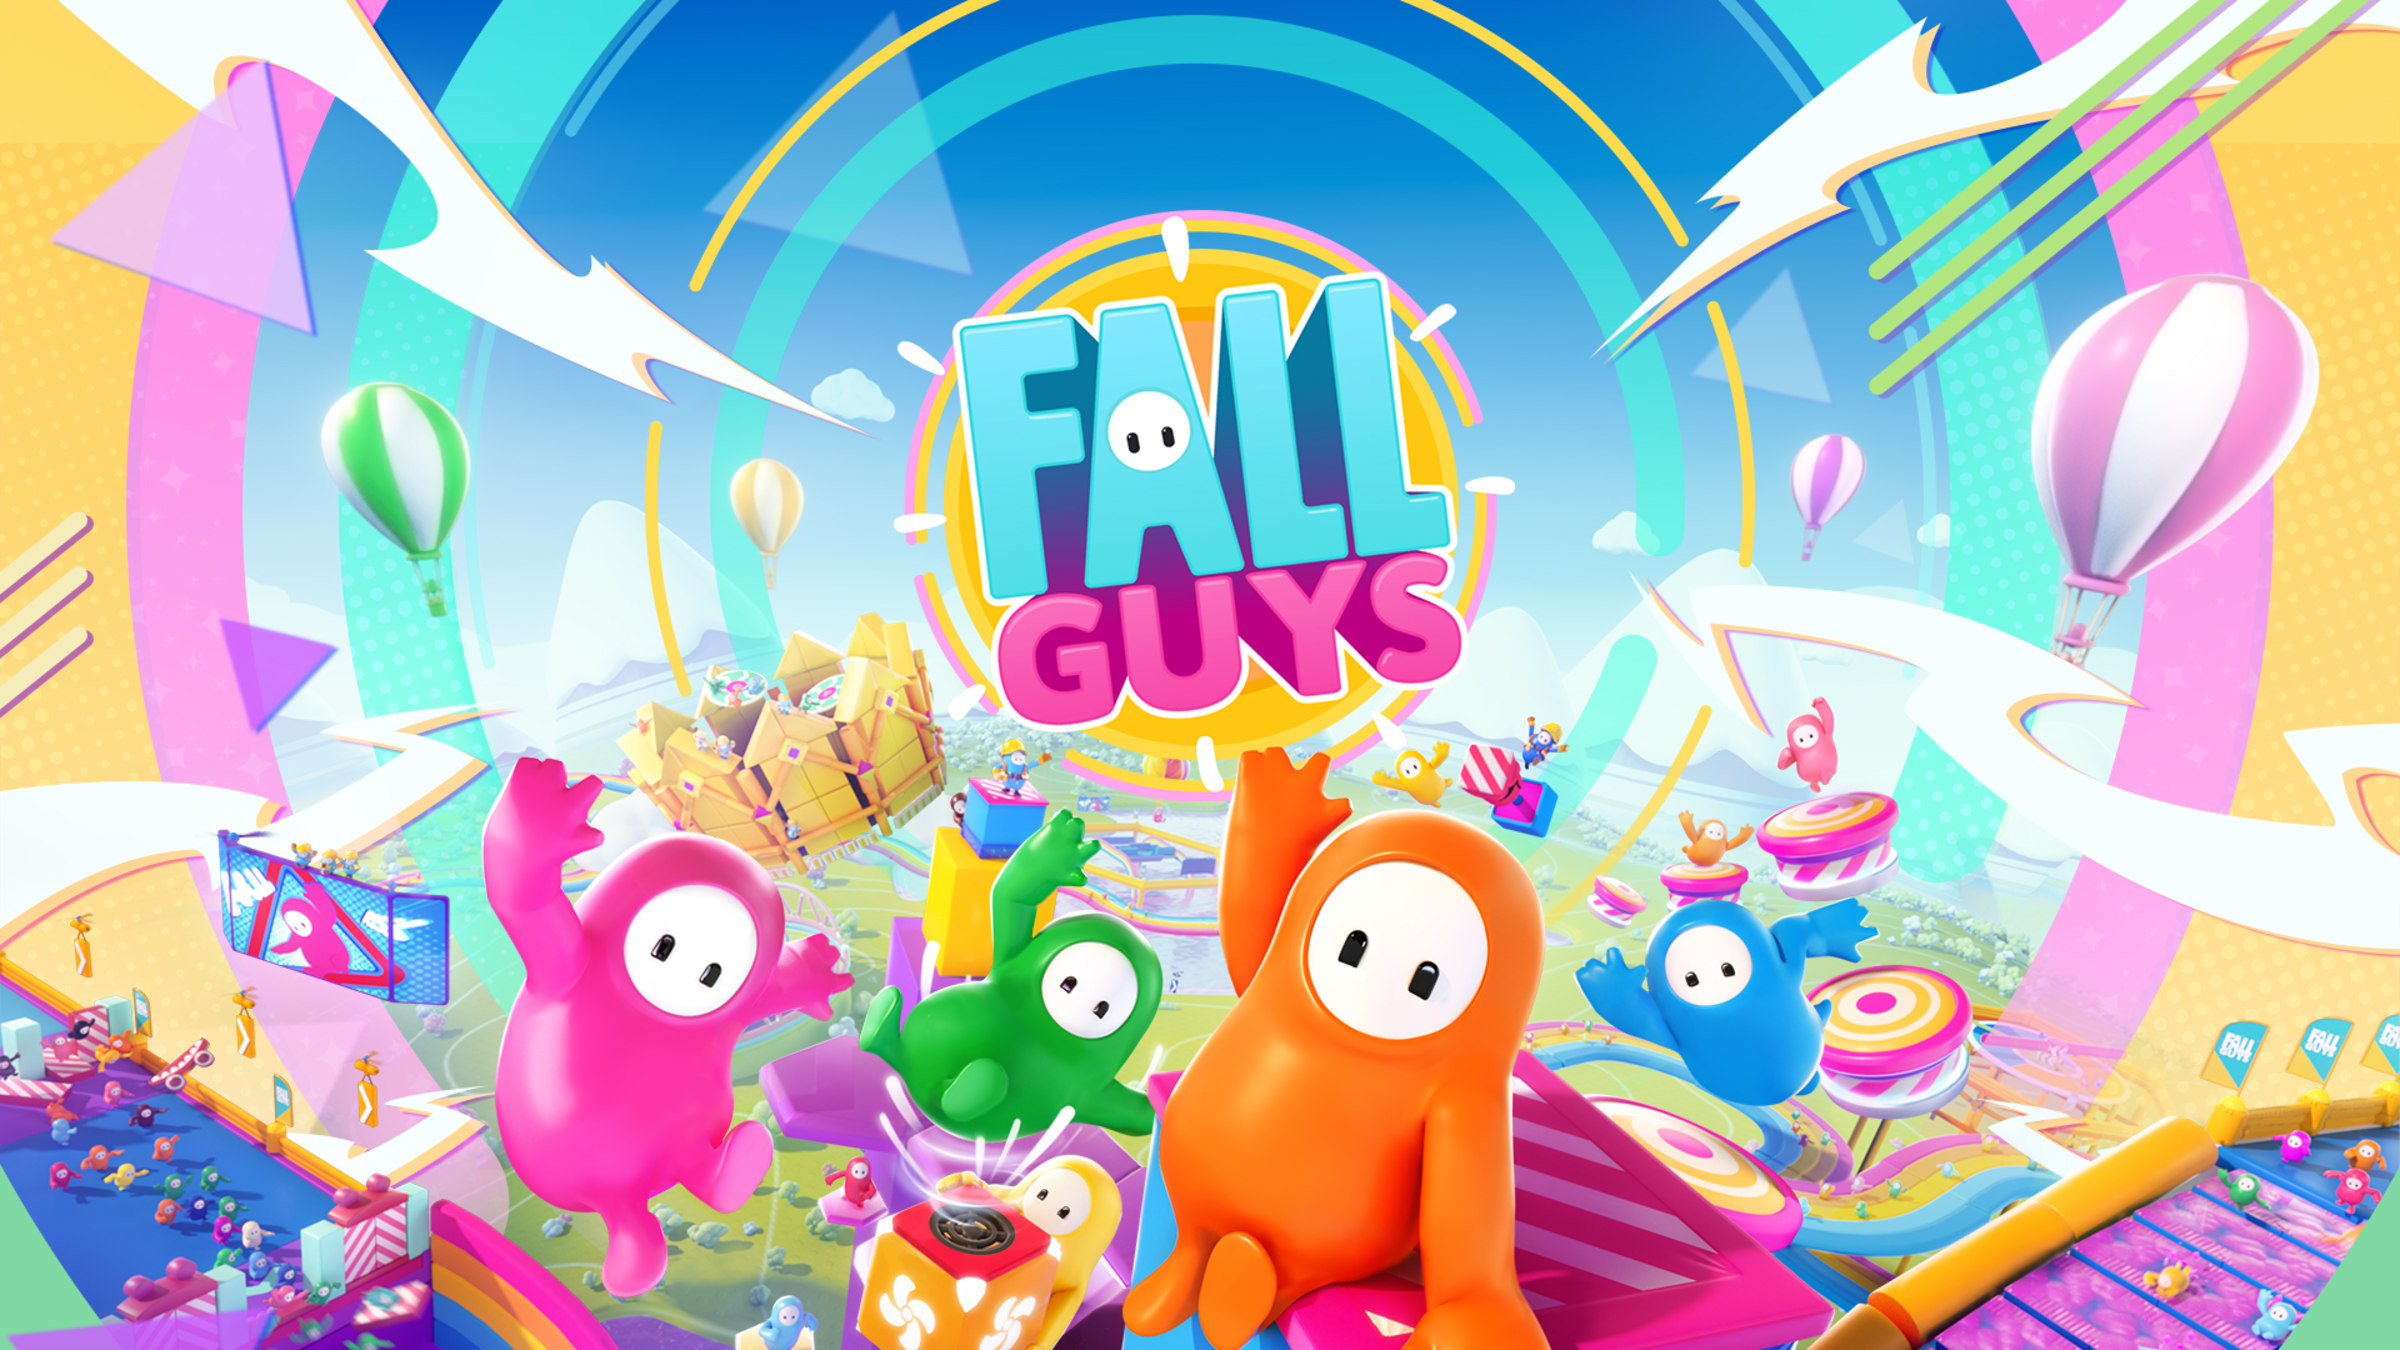 Fall Guys Grátis para Todos chega ao Xbox em 21 de junho - Xbox